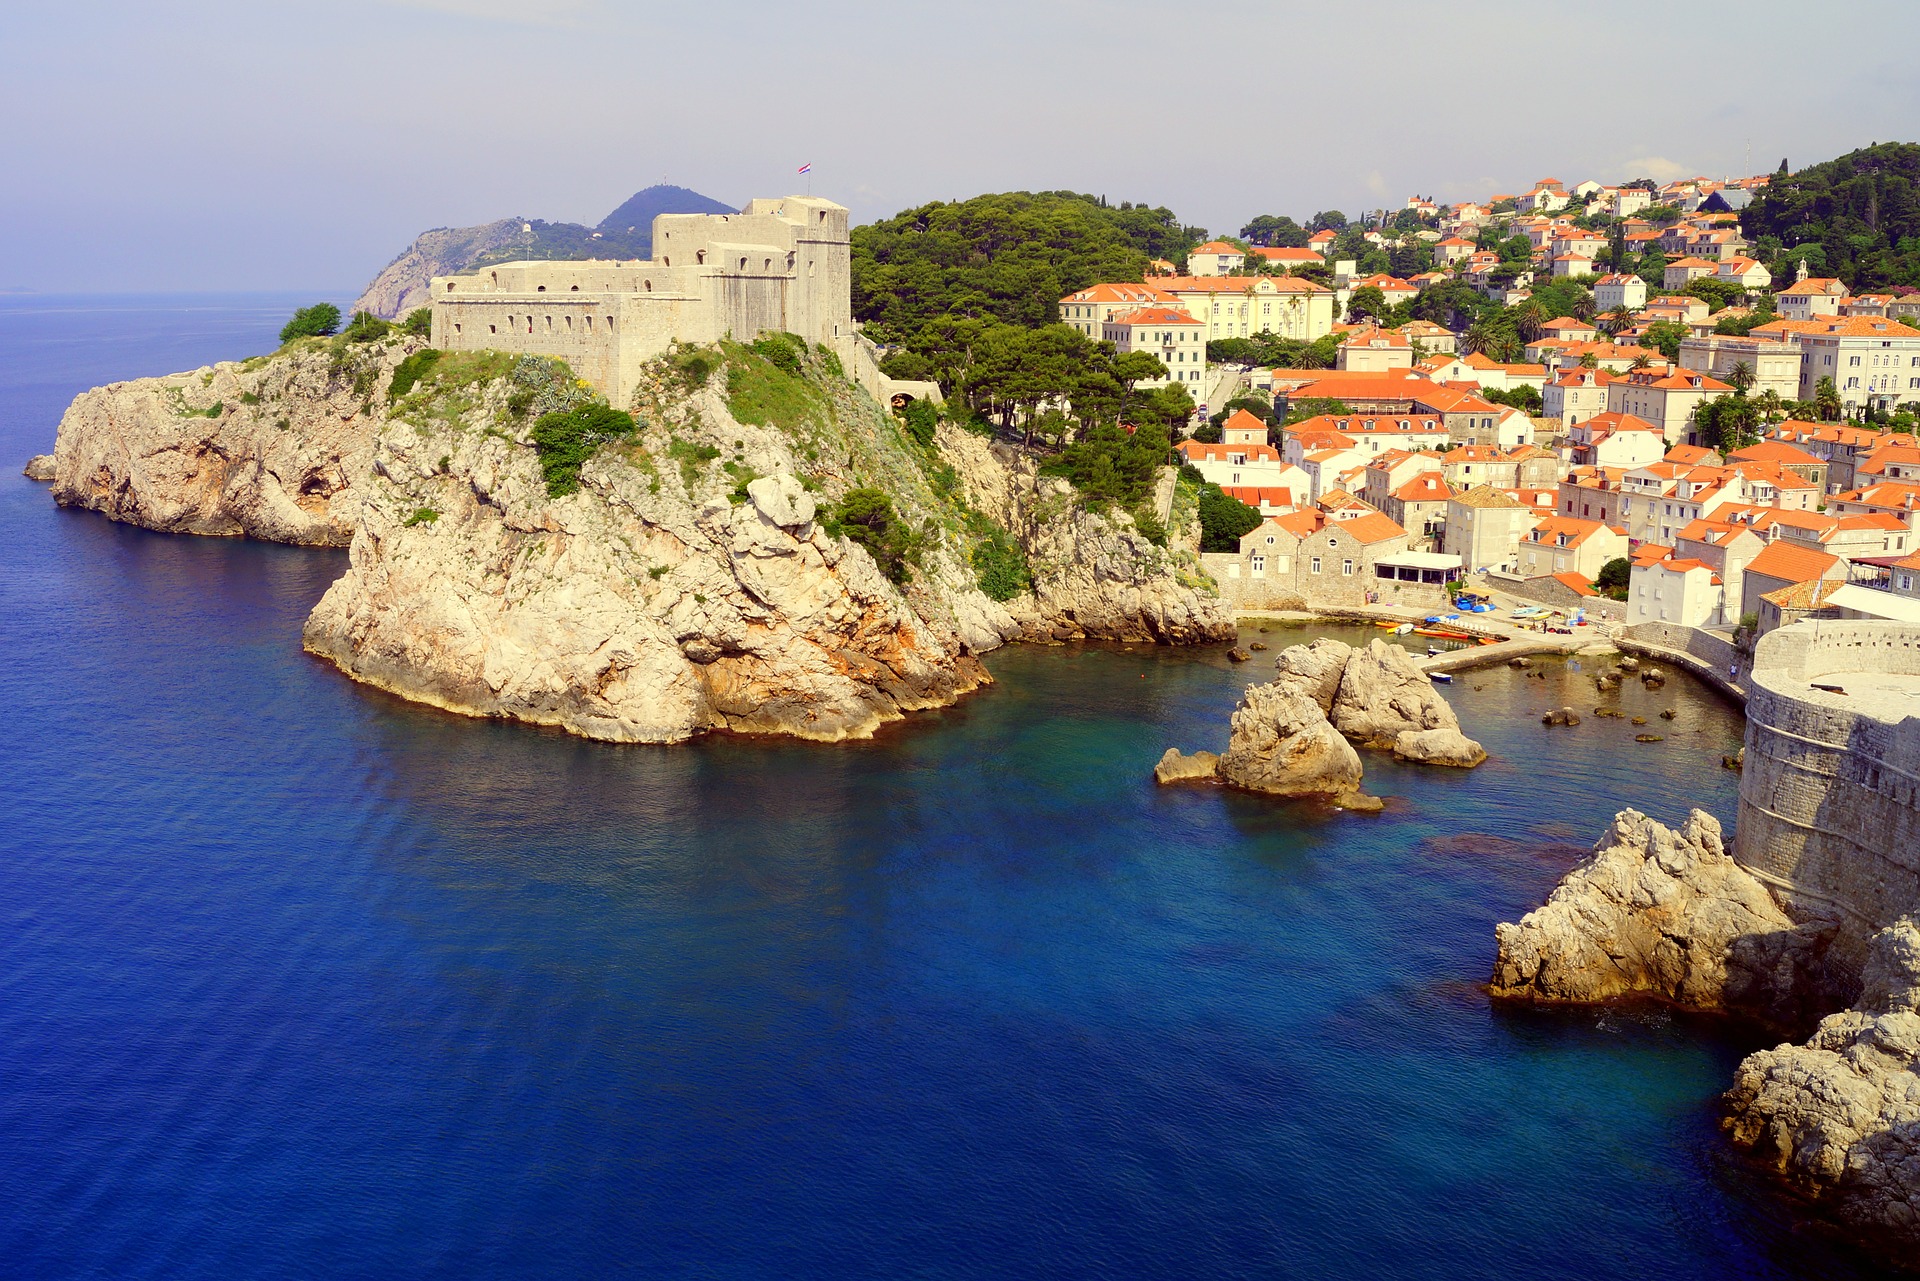 Wein verbindet man nicht unbedingt mit dem Urlaubsland Kroatien. Doch der Anbau hat hier eine lange Tradition. Bildquelle: pixabay.de